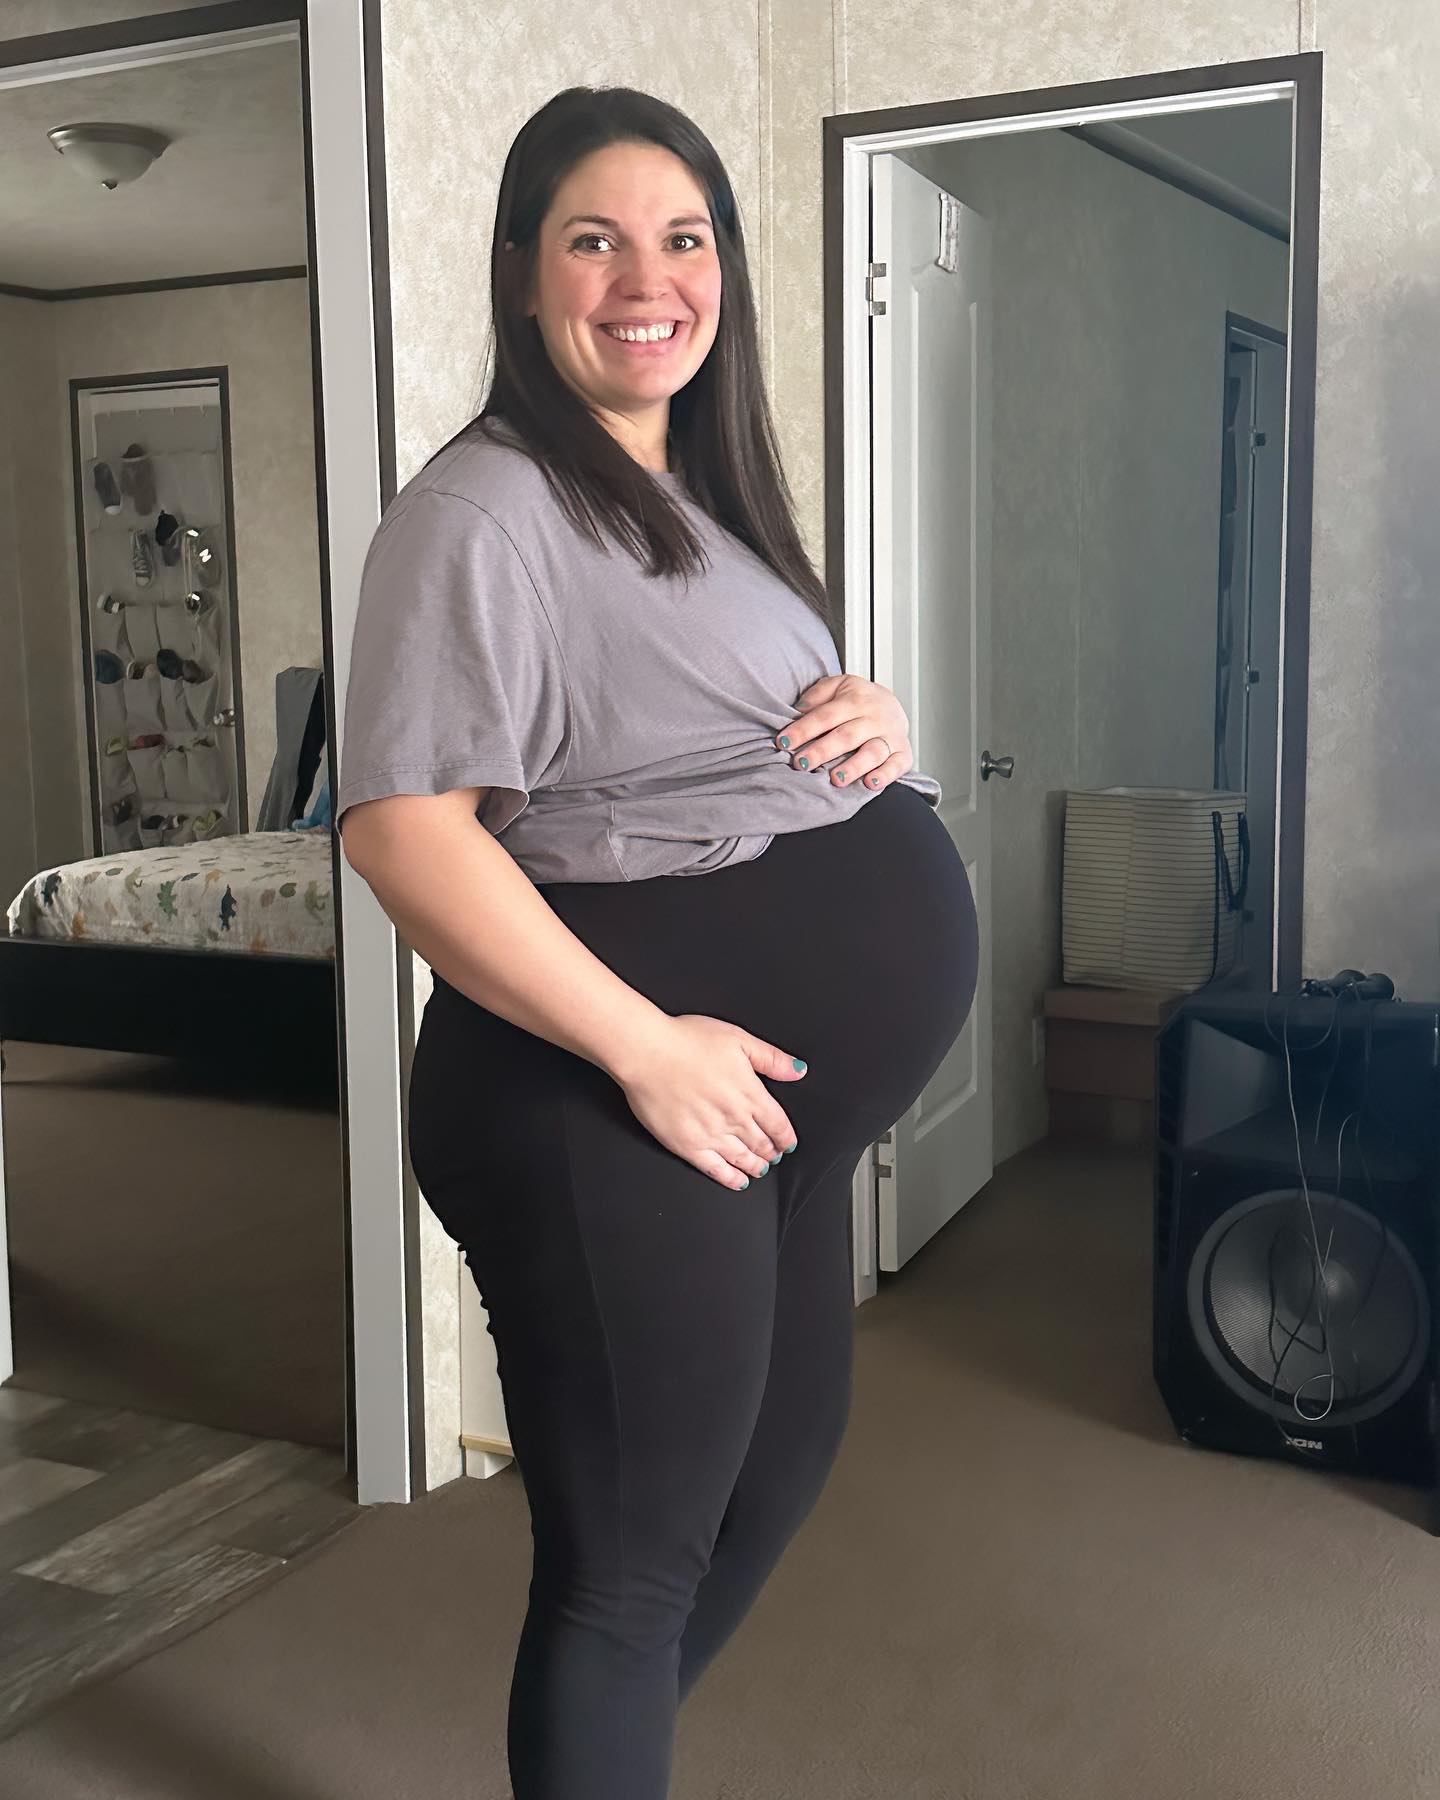 sabiaspalavras.com - Mulher nasceu com 2 úteros e agora está grávida de ambos - é uma probabilidade de 1 em 50 milhões